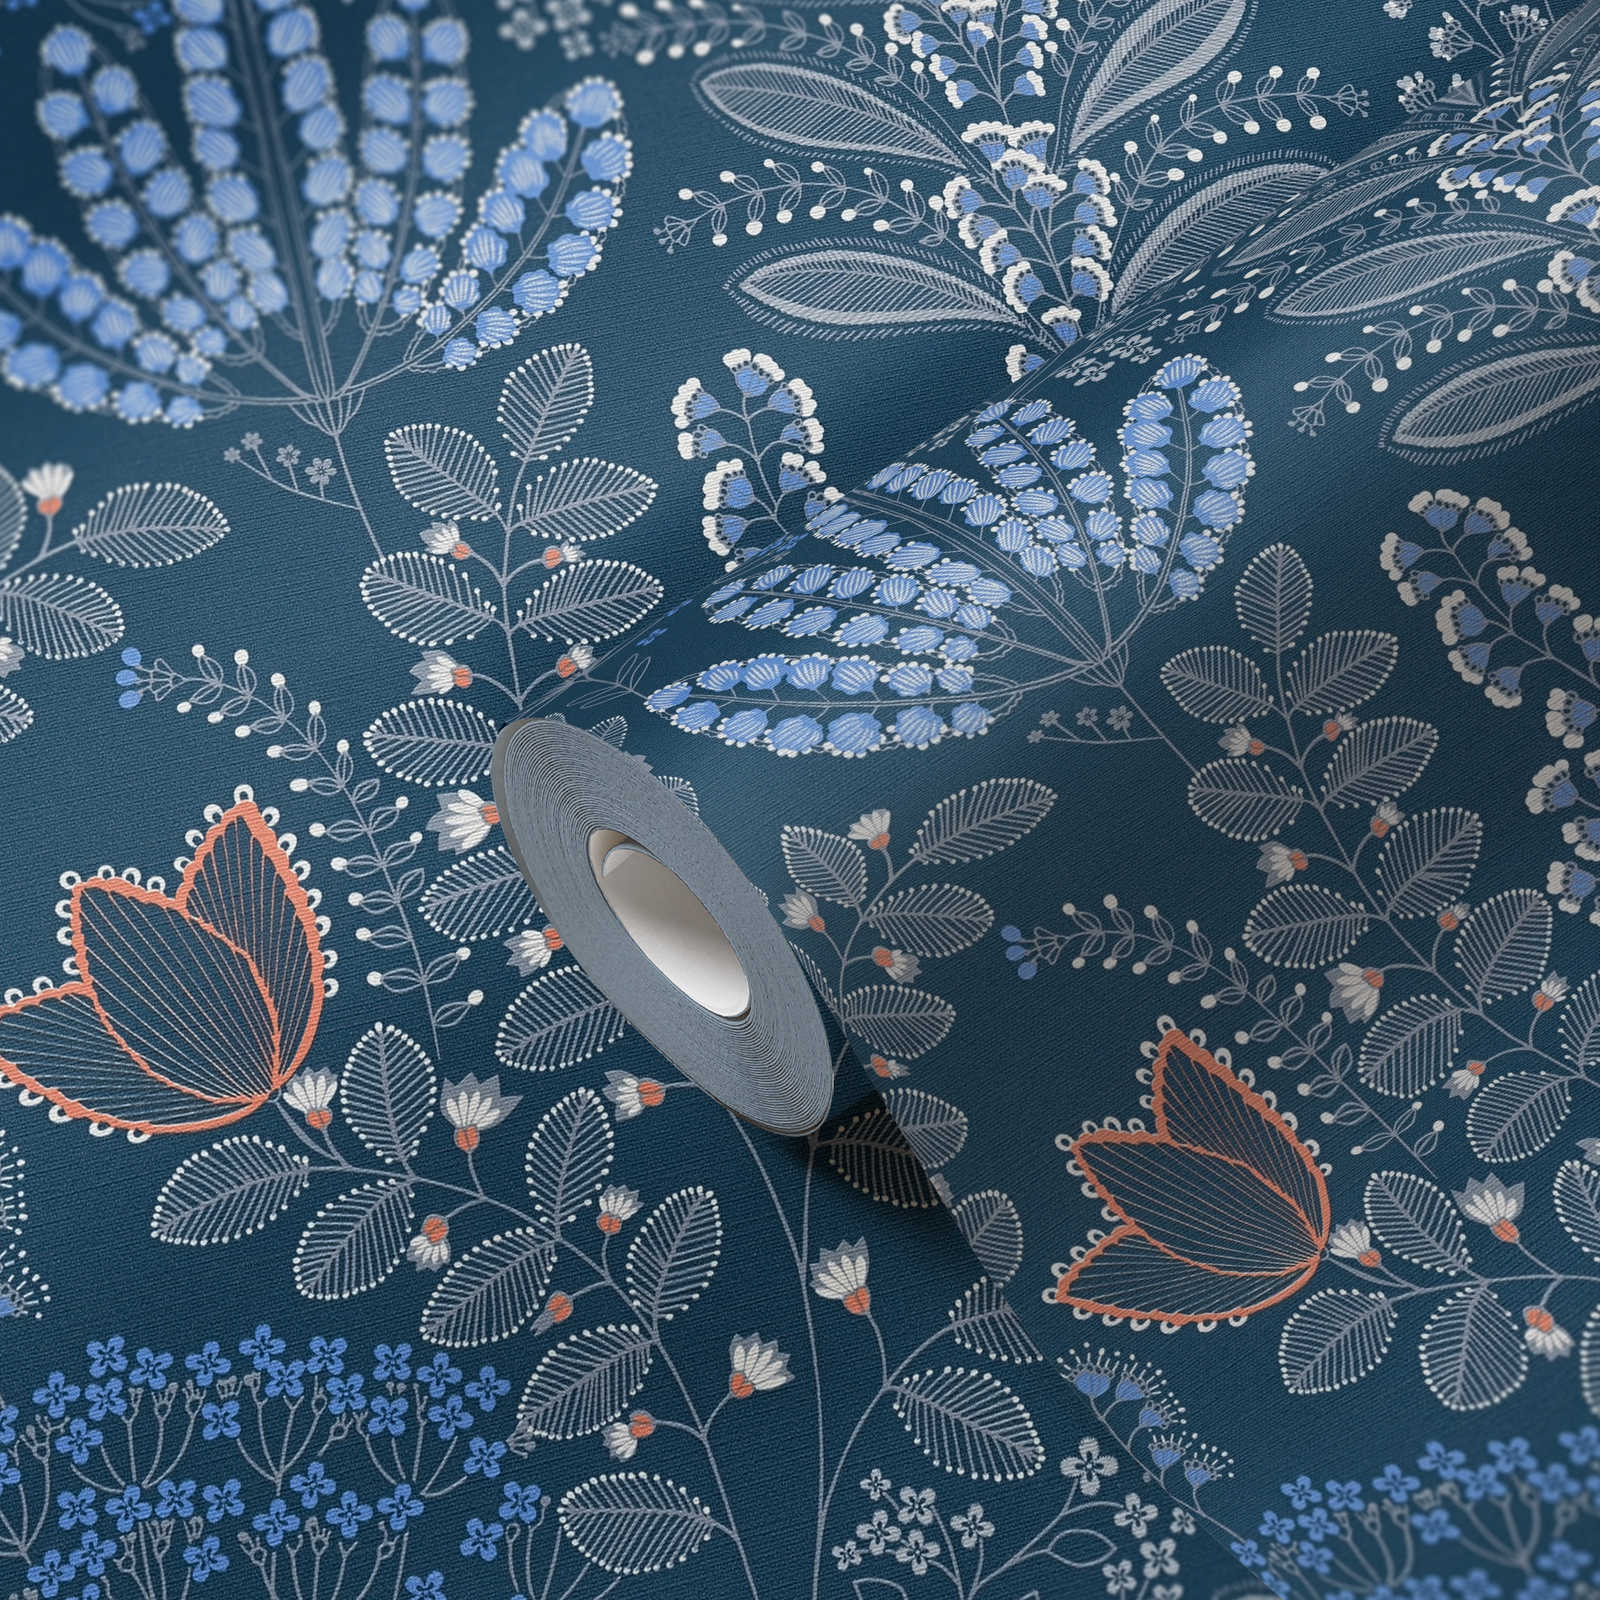             Vliesbehang bloem met bladeren in retro-look licht gestructureerd, mat - blauw, wit, grijs
        